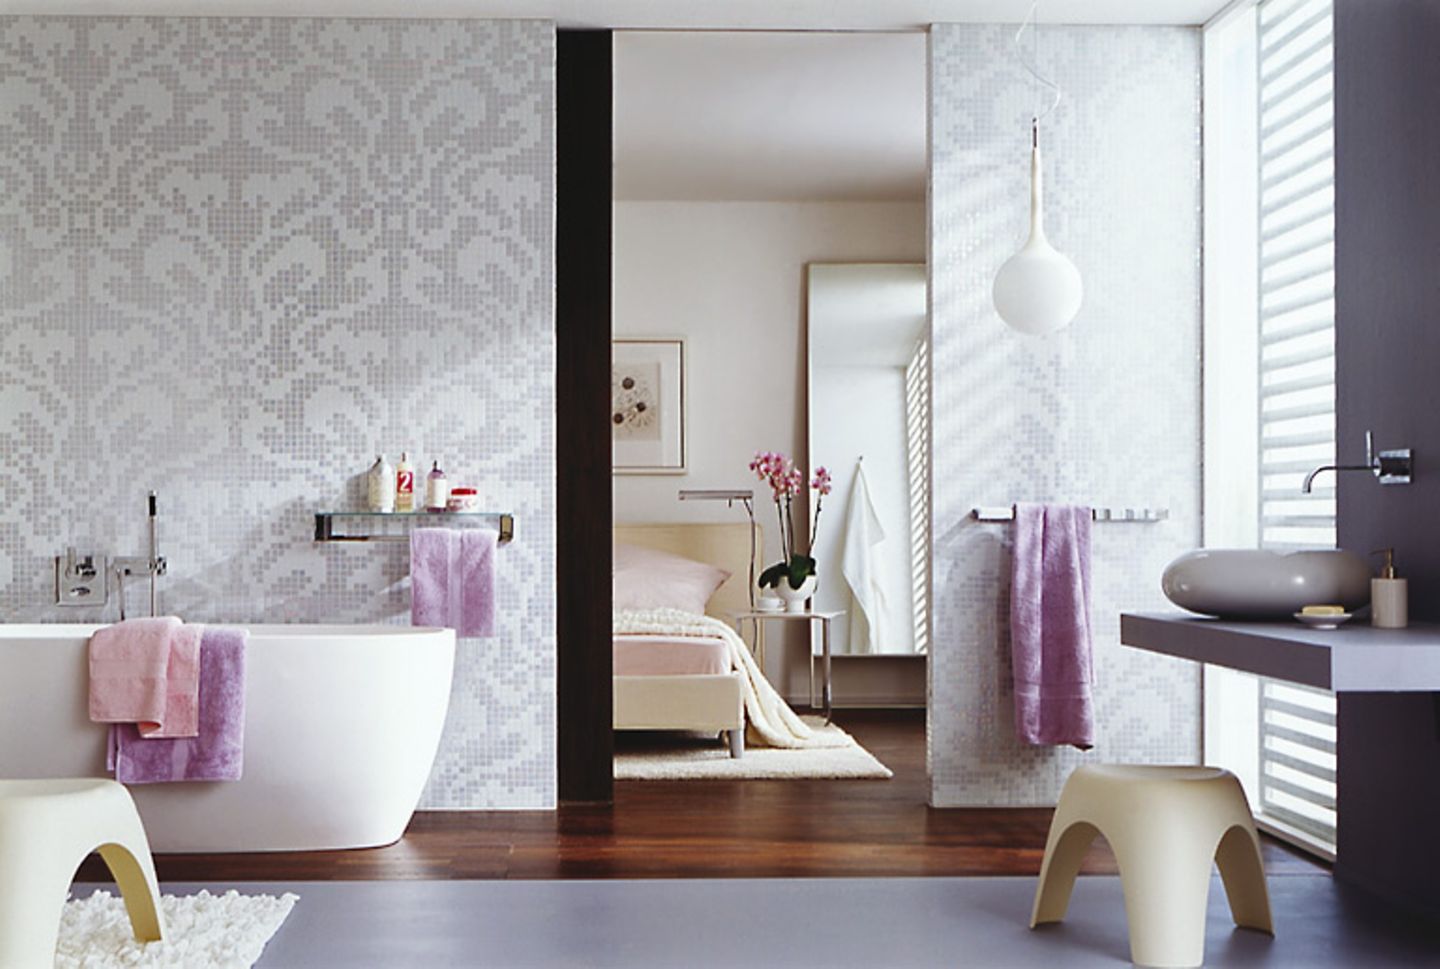 Stilvolles Bad mit Mosaikfliesen in floralem Muster